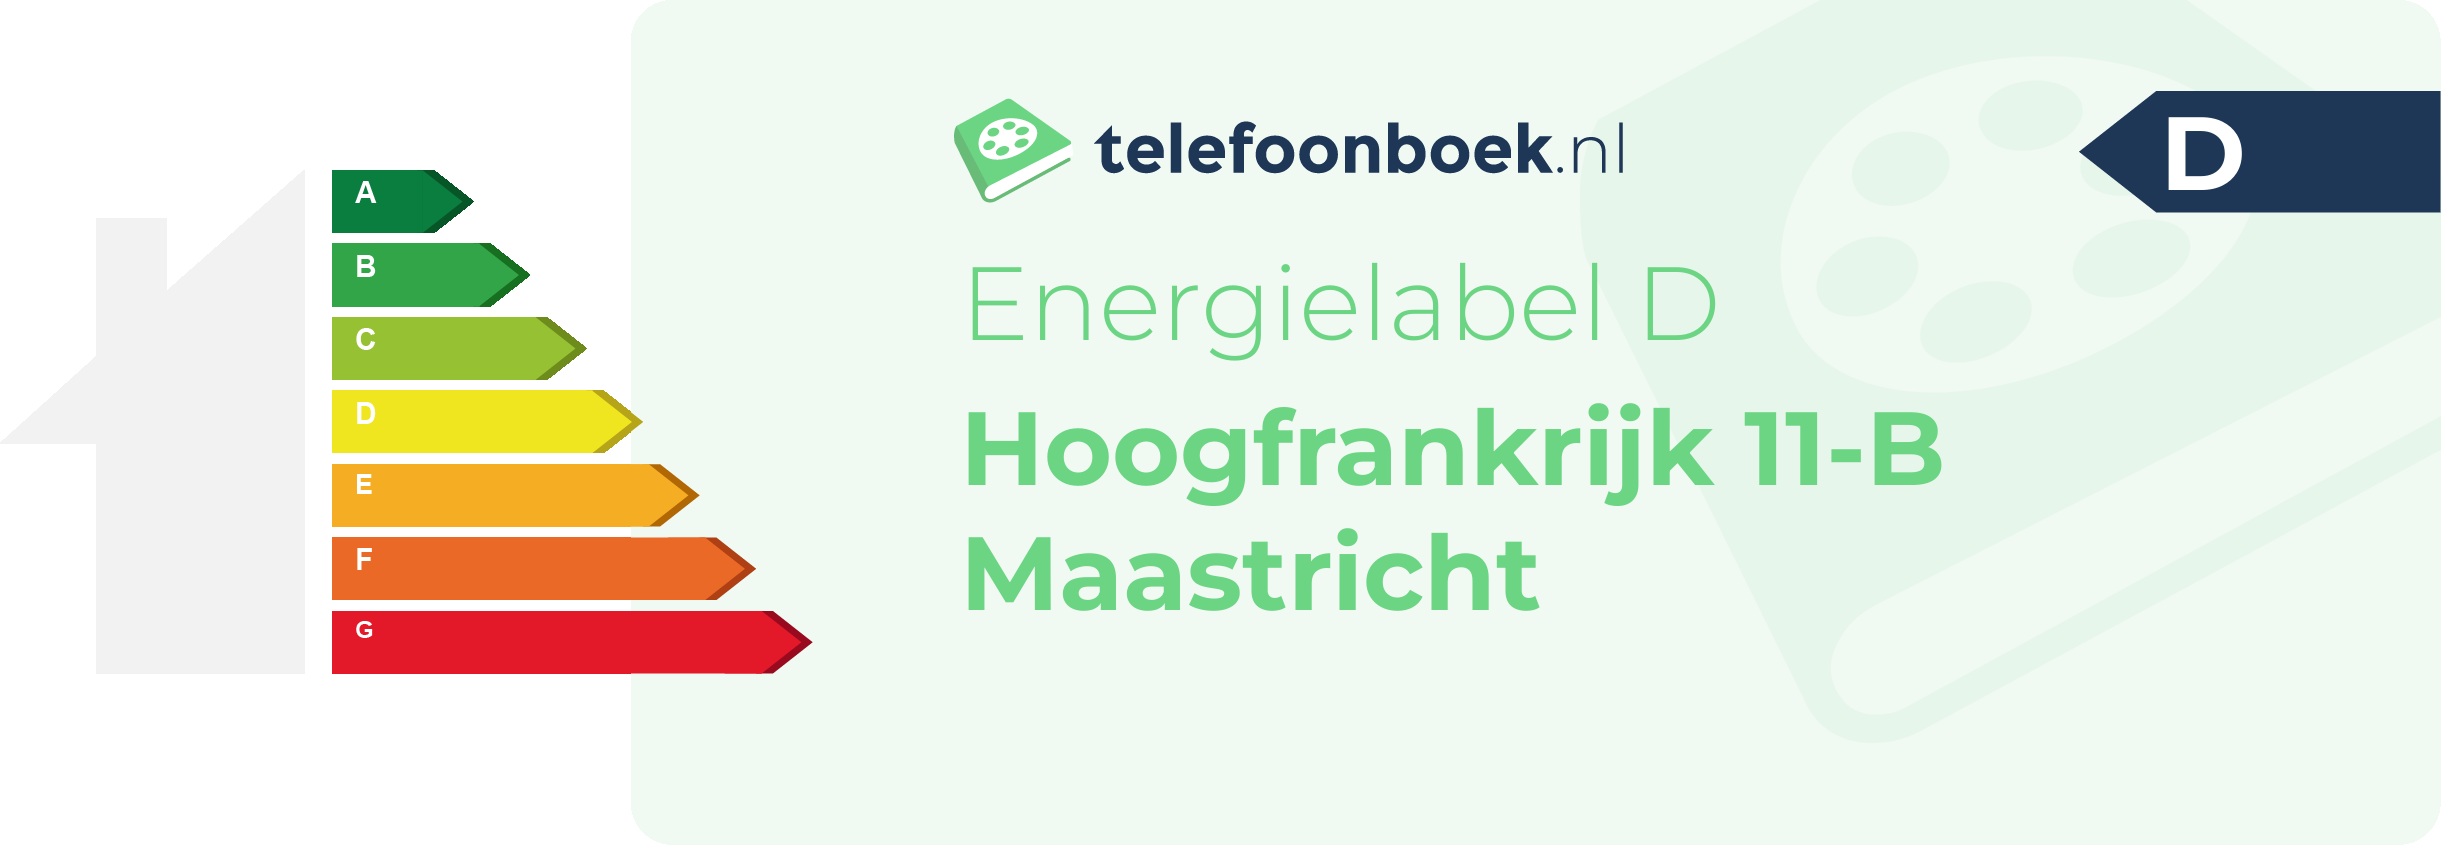 Energielabel Hoogfrankrijk 11-B Maastricht